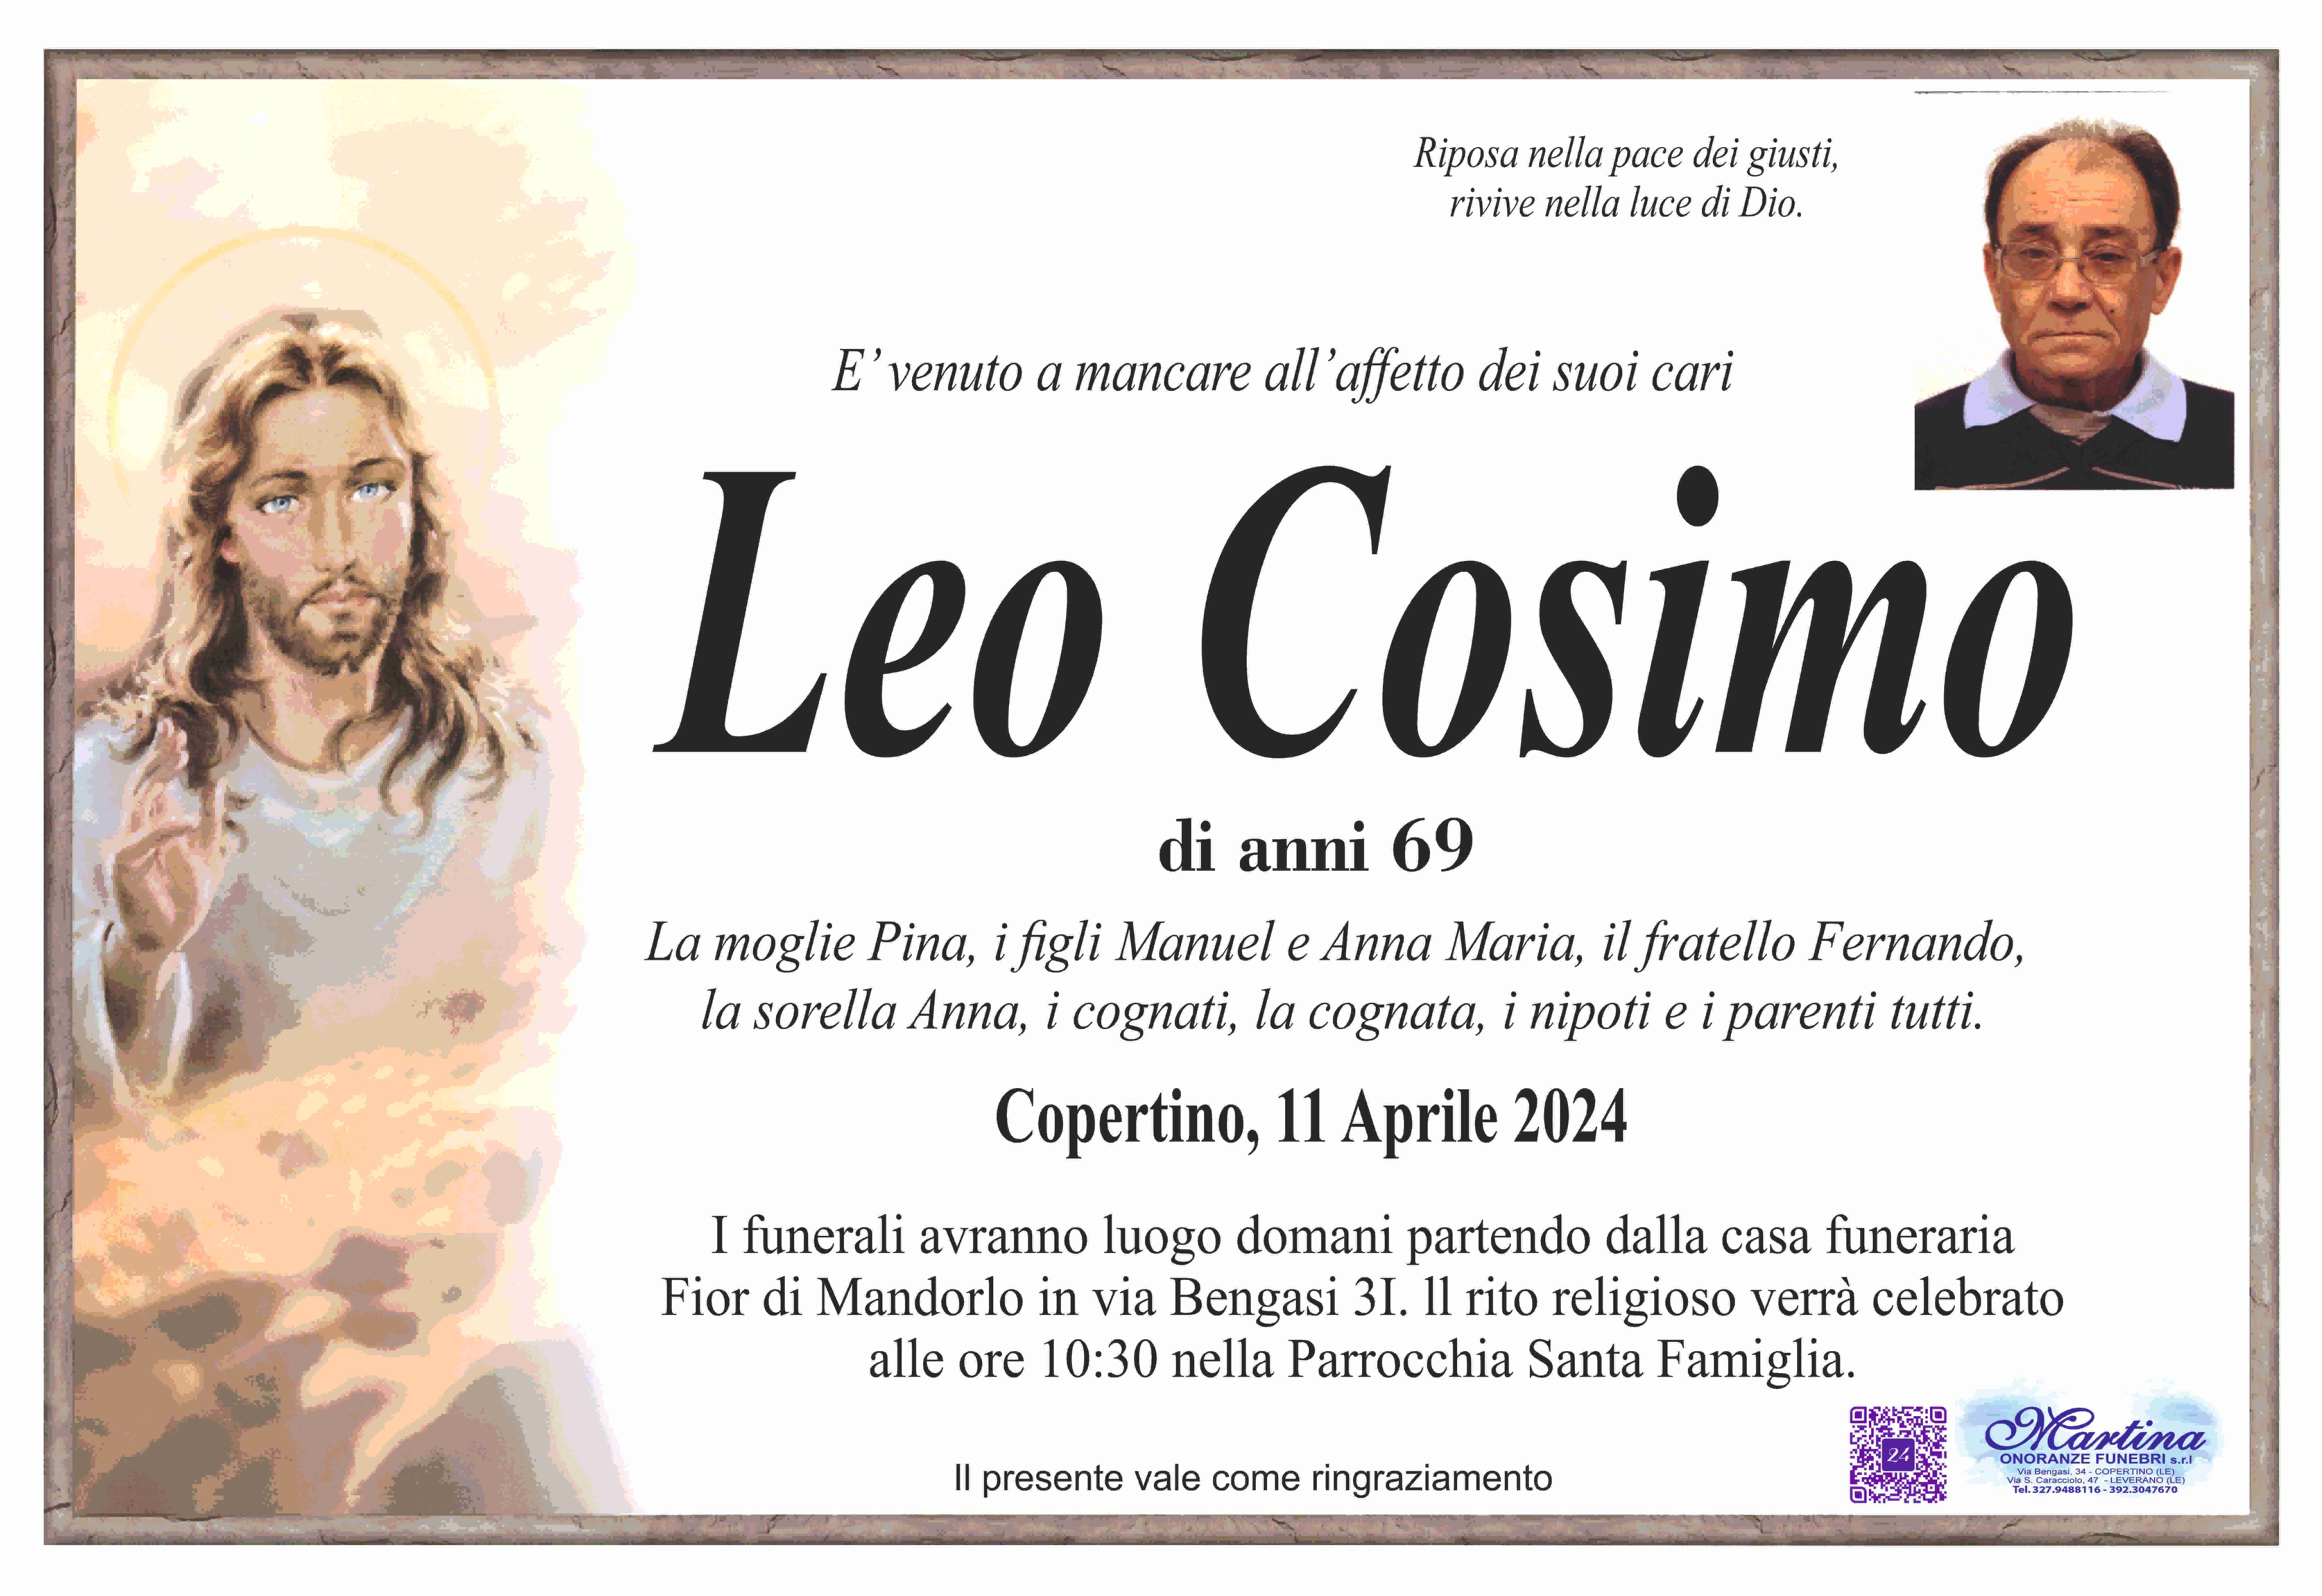 Cosimo Leo